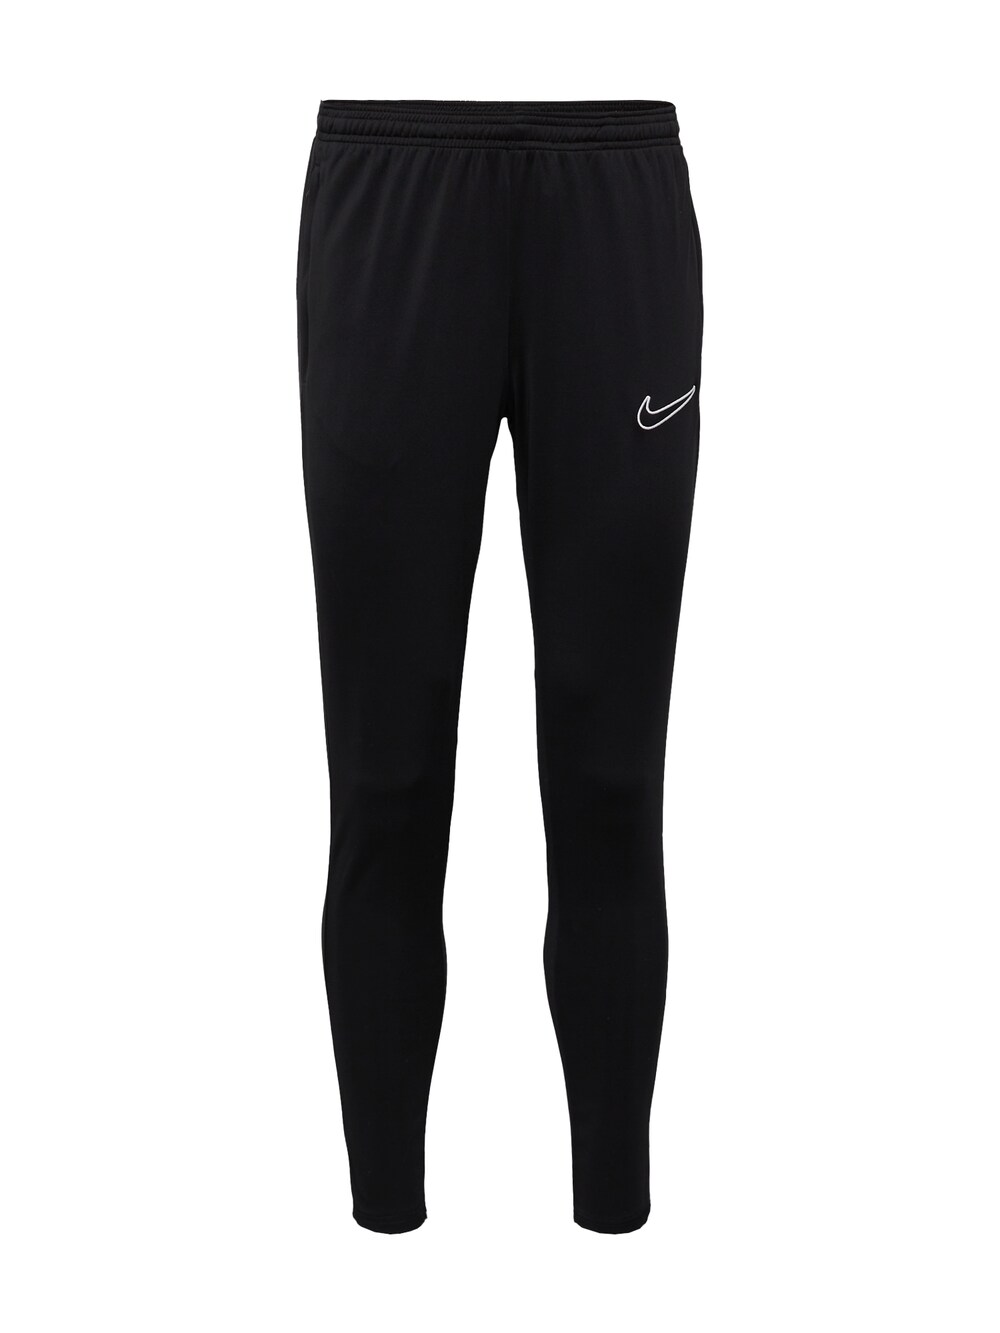 Зауженные тренировочные брюки Nike Academy23, черный зауженные тренировочные брюки nike one pro черный